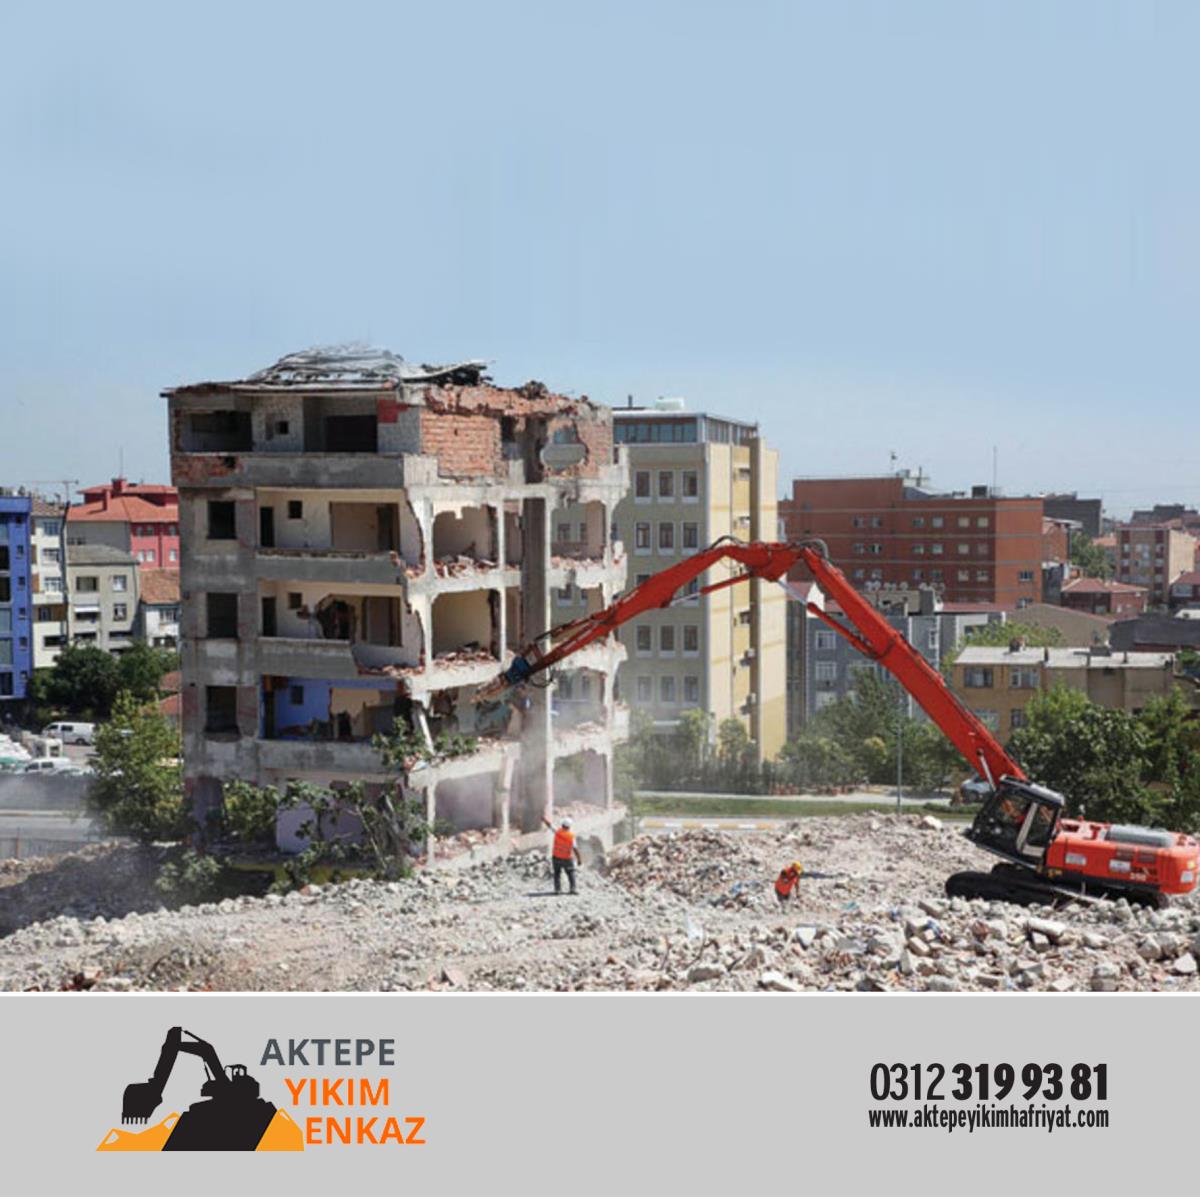 Ankara’daki Çevreye Duyarlı Yıkım Firmaları